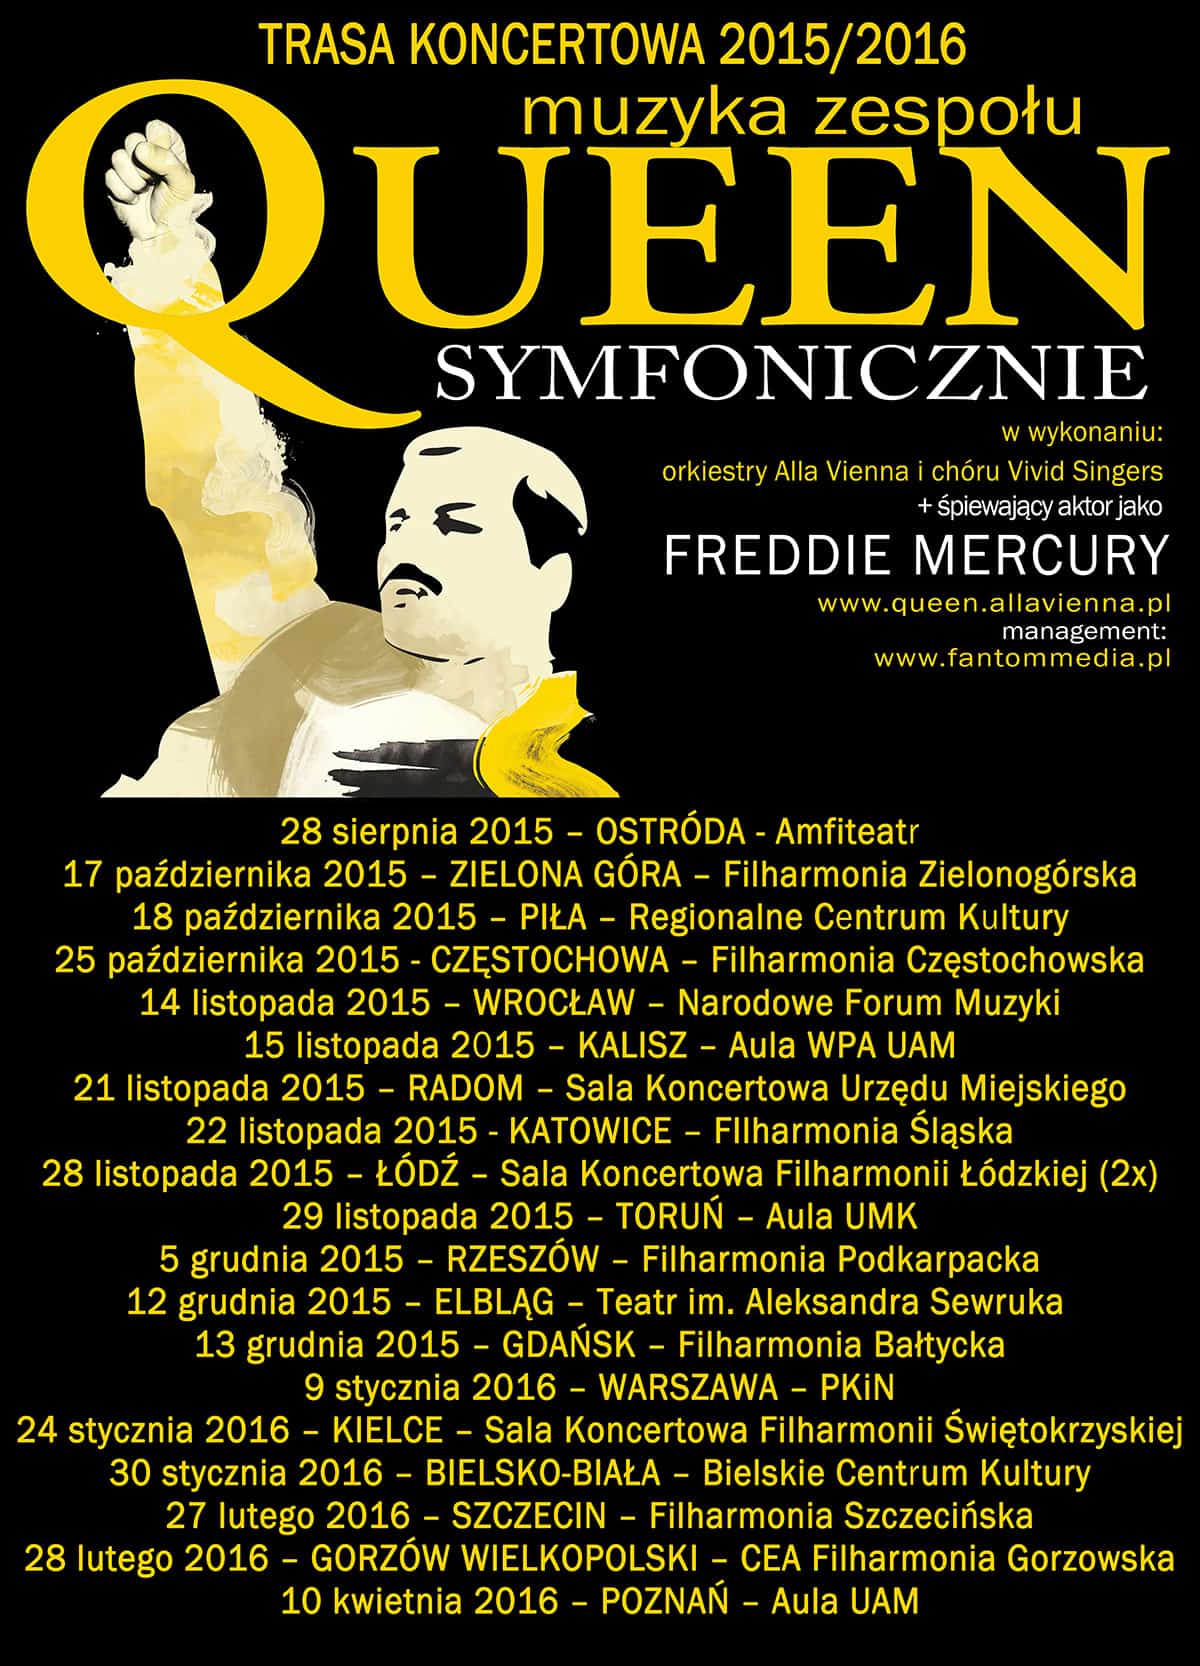 20 nowych koncertów na trasie Queen Symfonicznie 20152016!